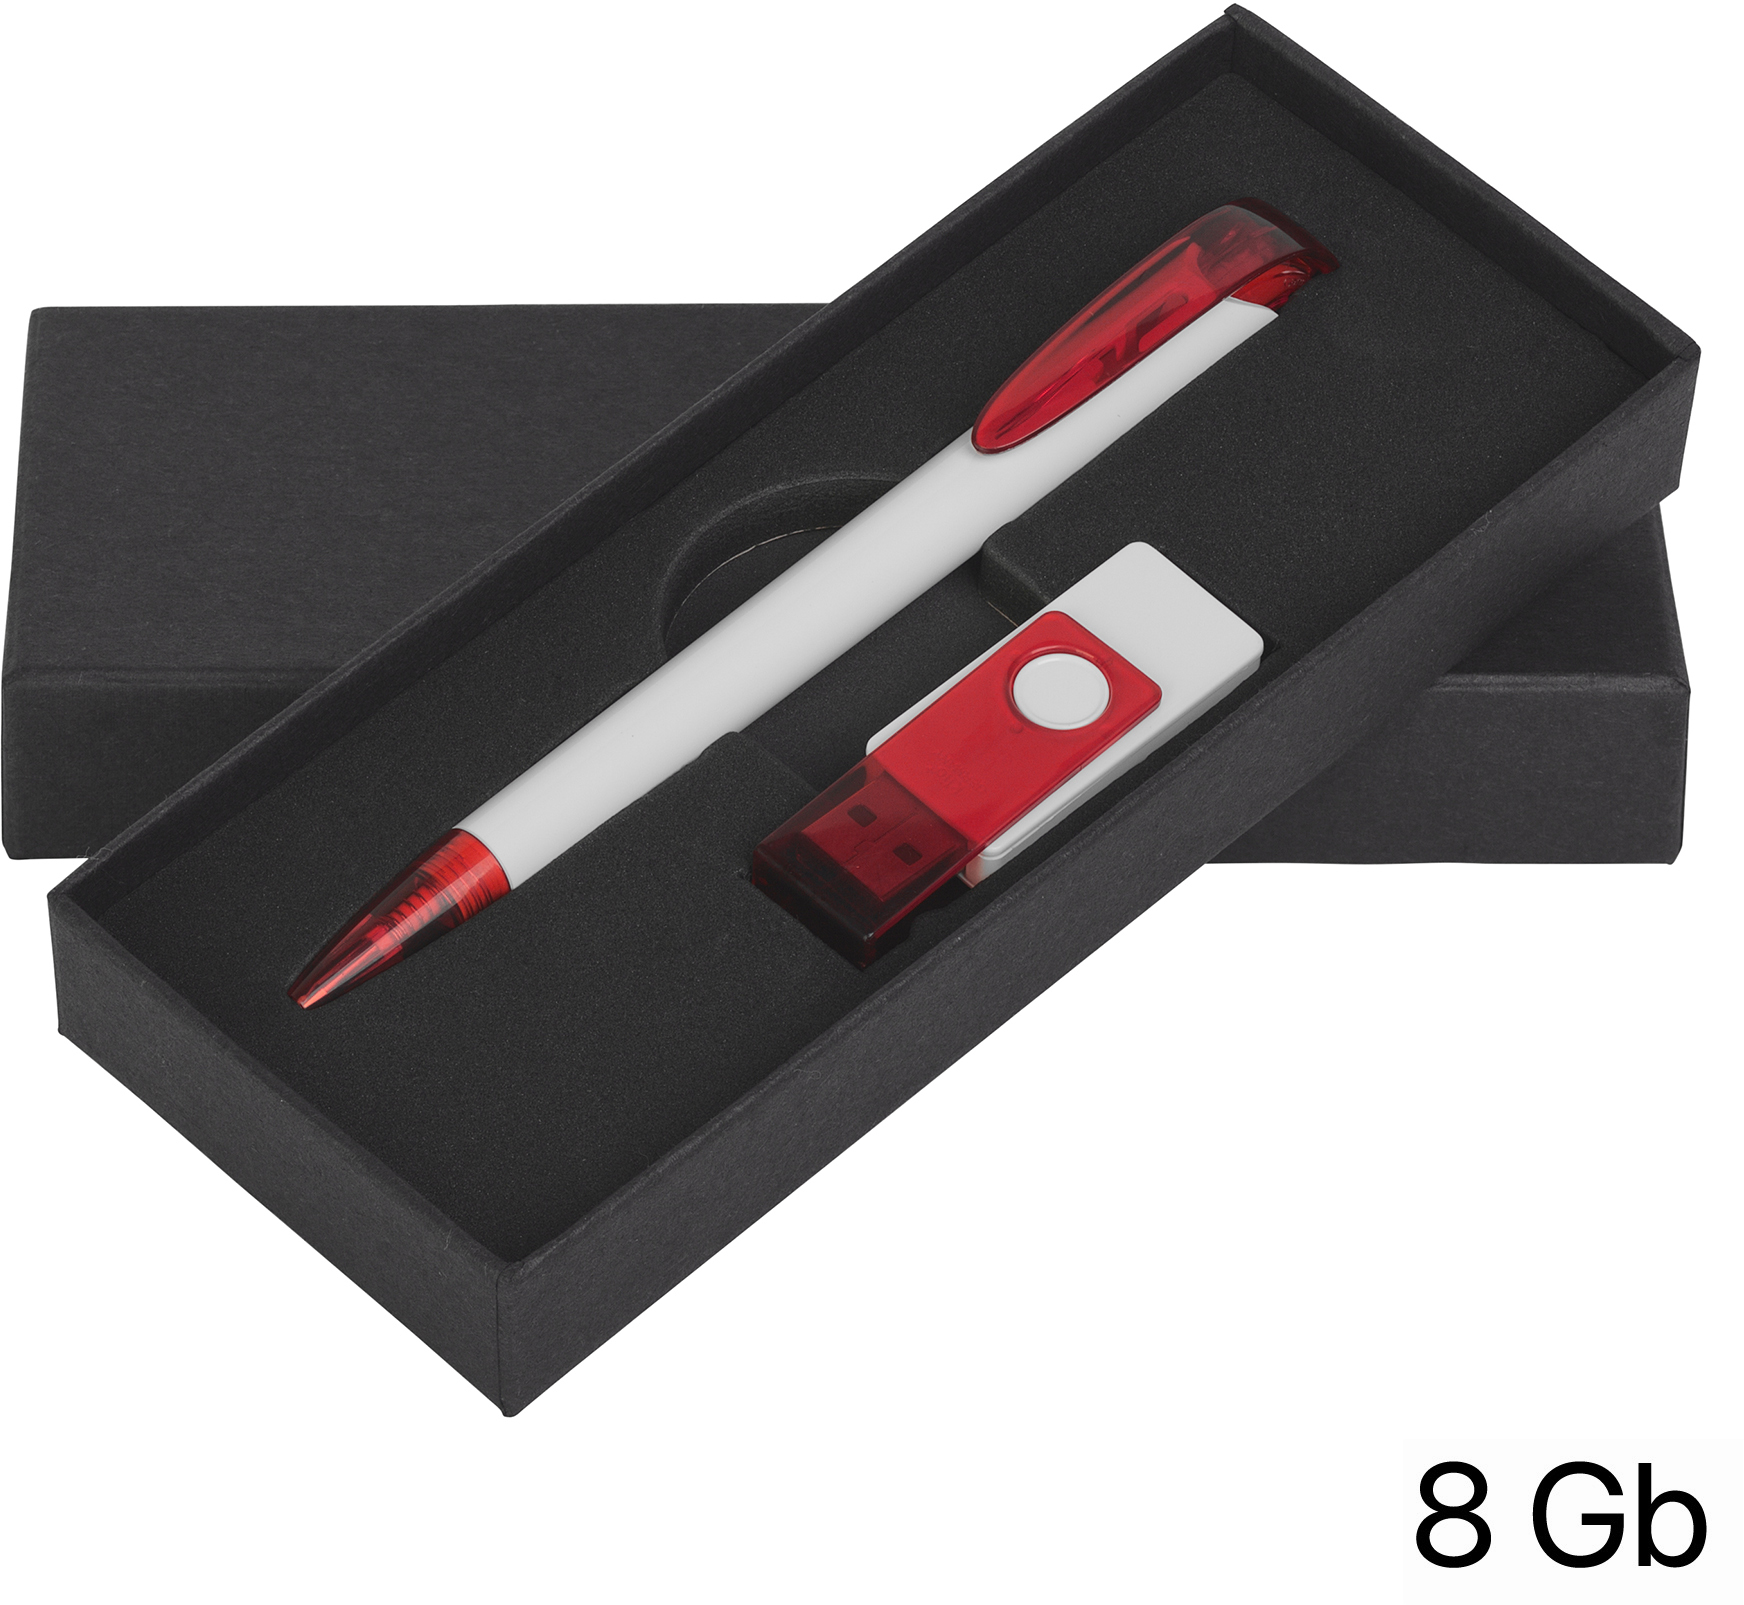 Артикул: E70120-1/4T/8Gb — Набор ручка + флеш-карта 8Гб в футляре